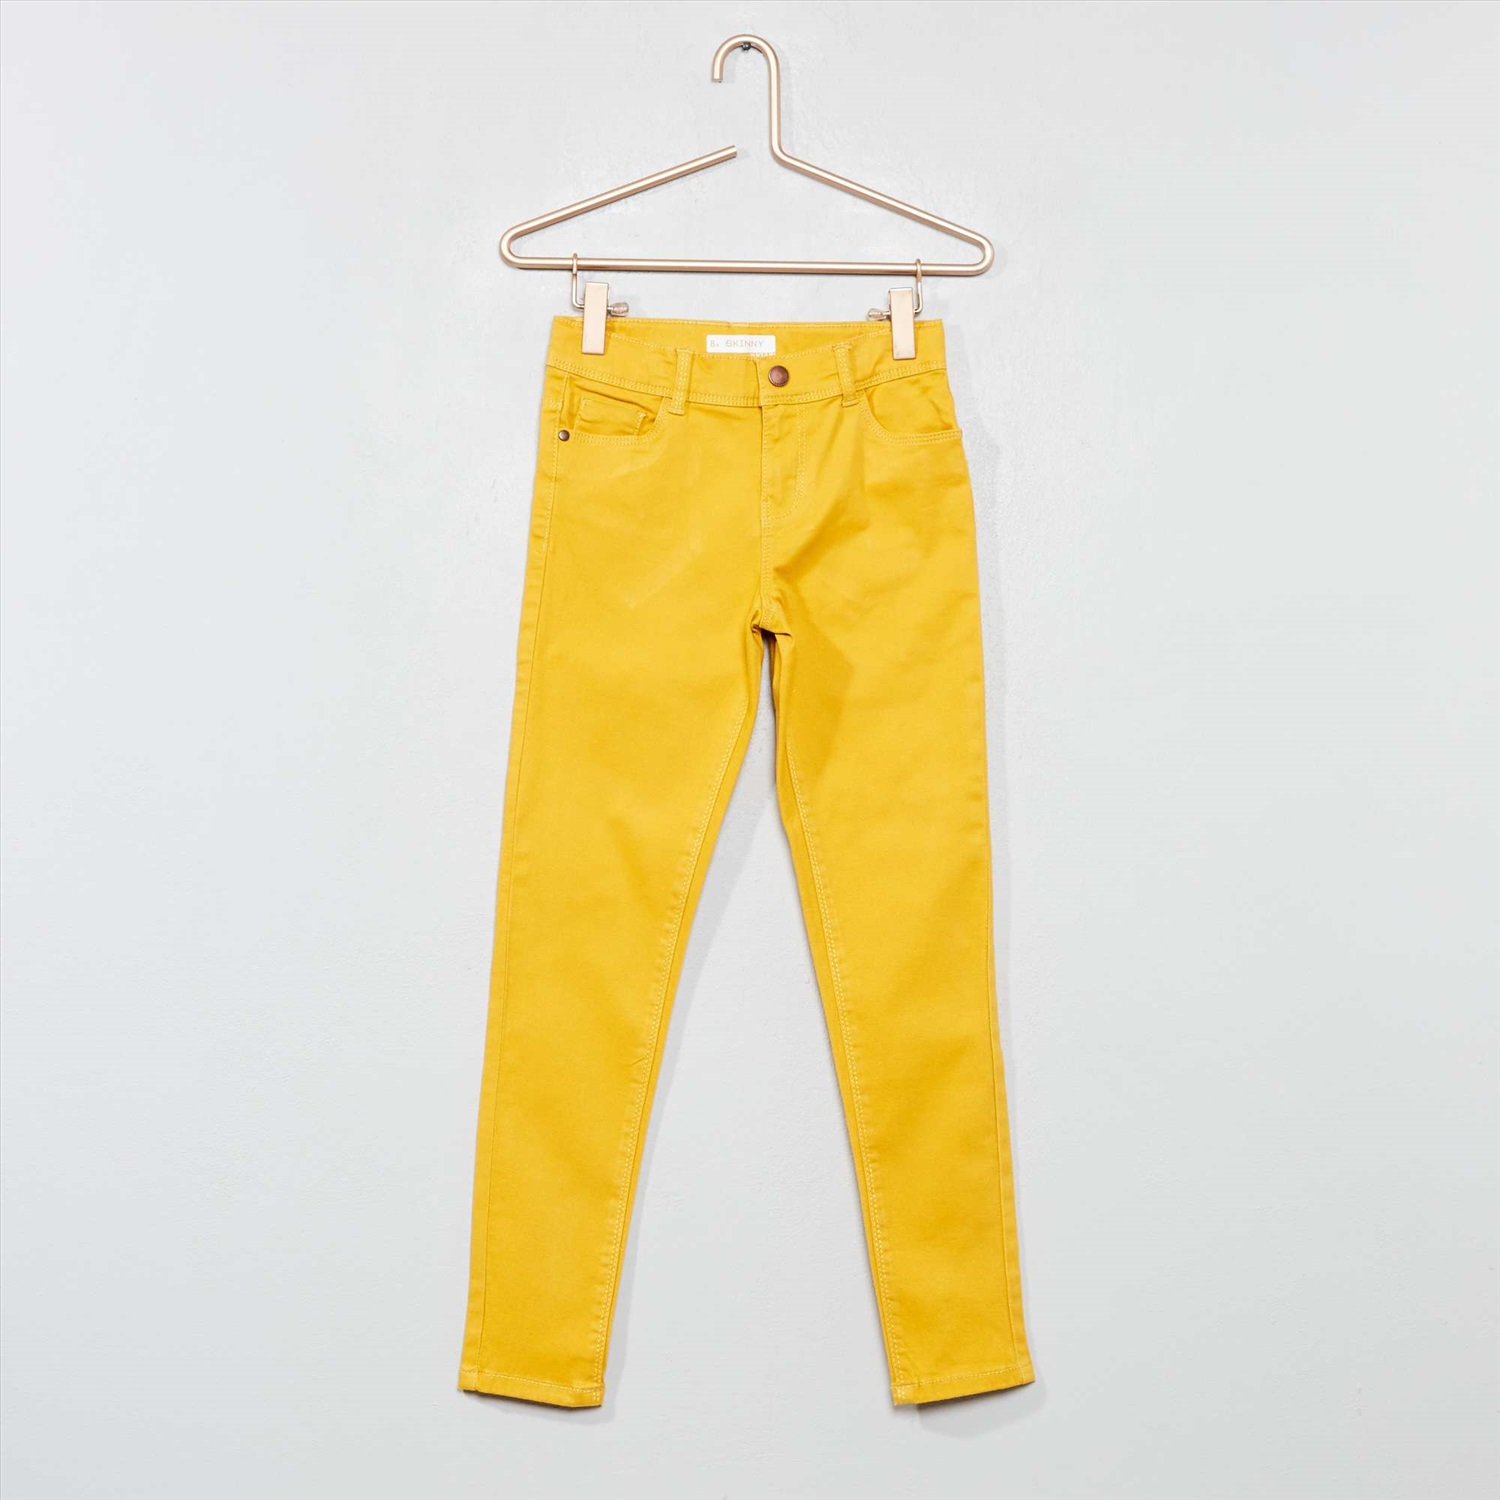 Облегающие брюки из джинсовой ткани - желтый купить, отзывы, фото, доставка- Совместные покупки в Калининграде и области